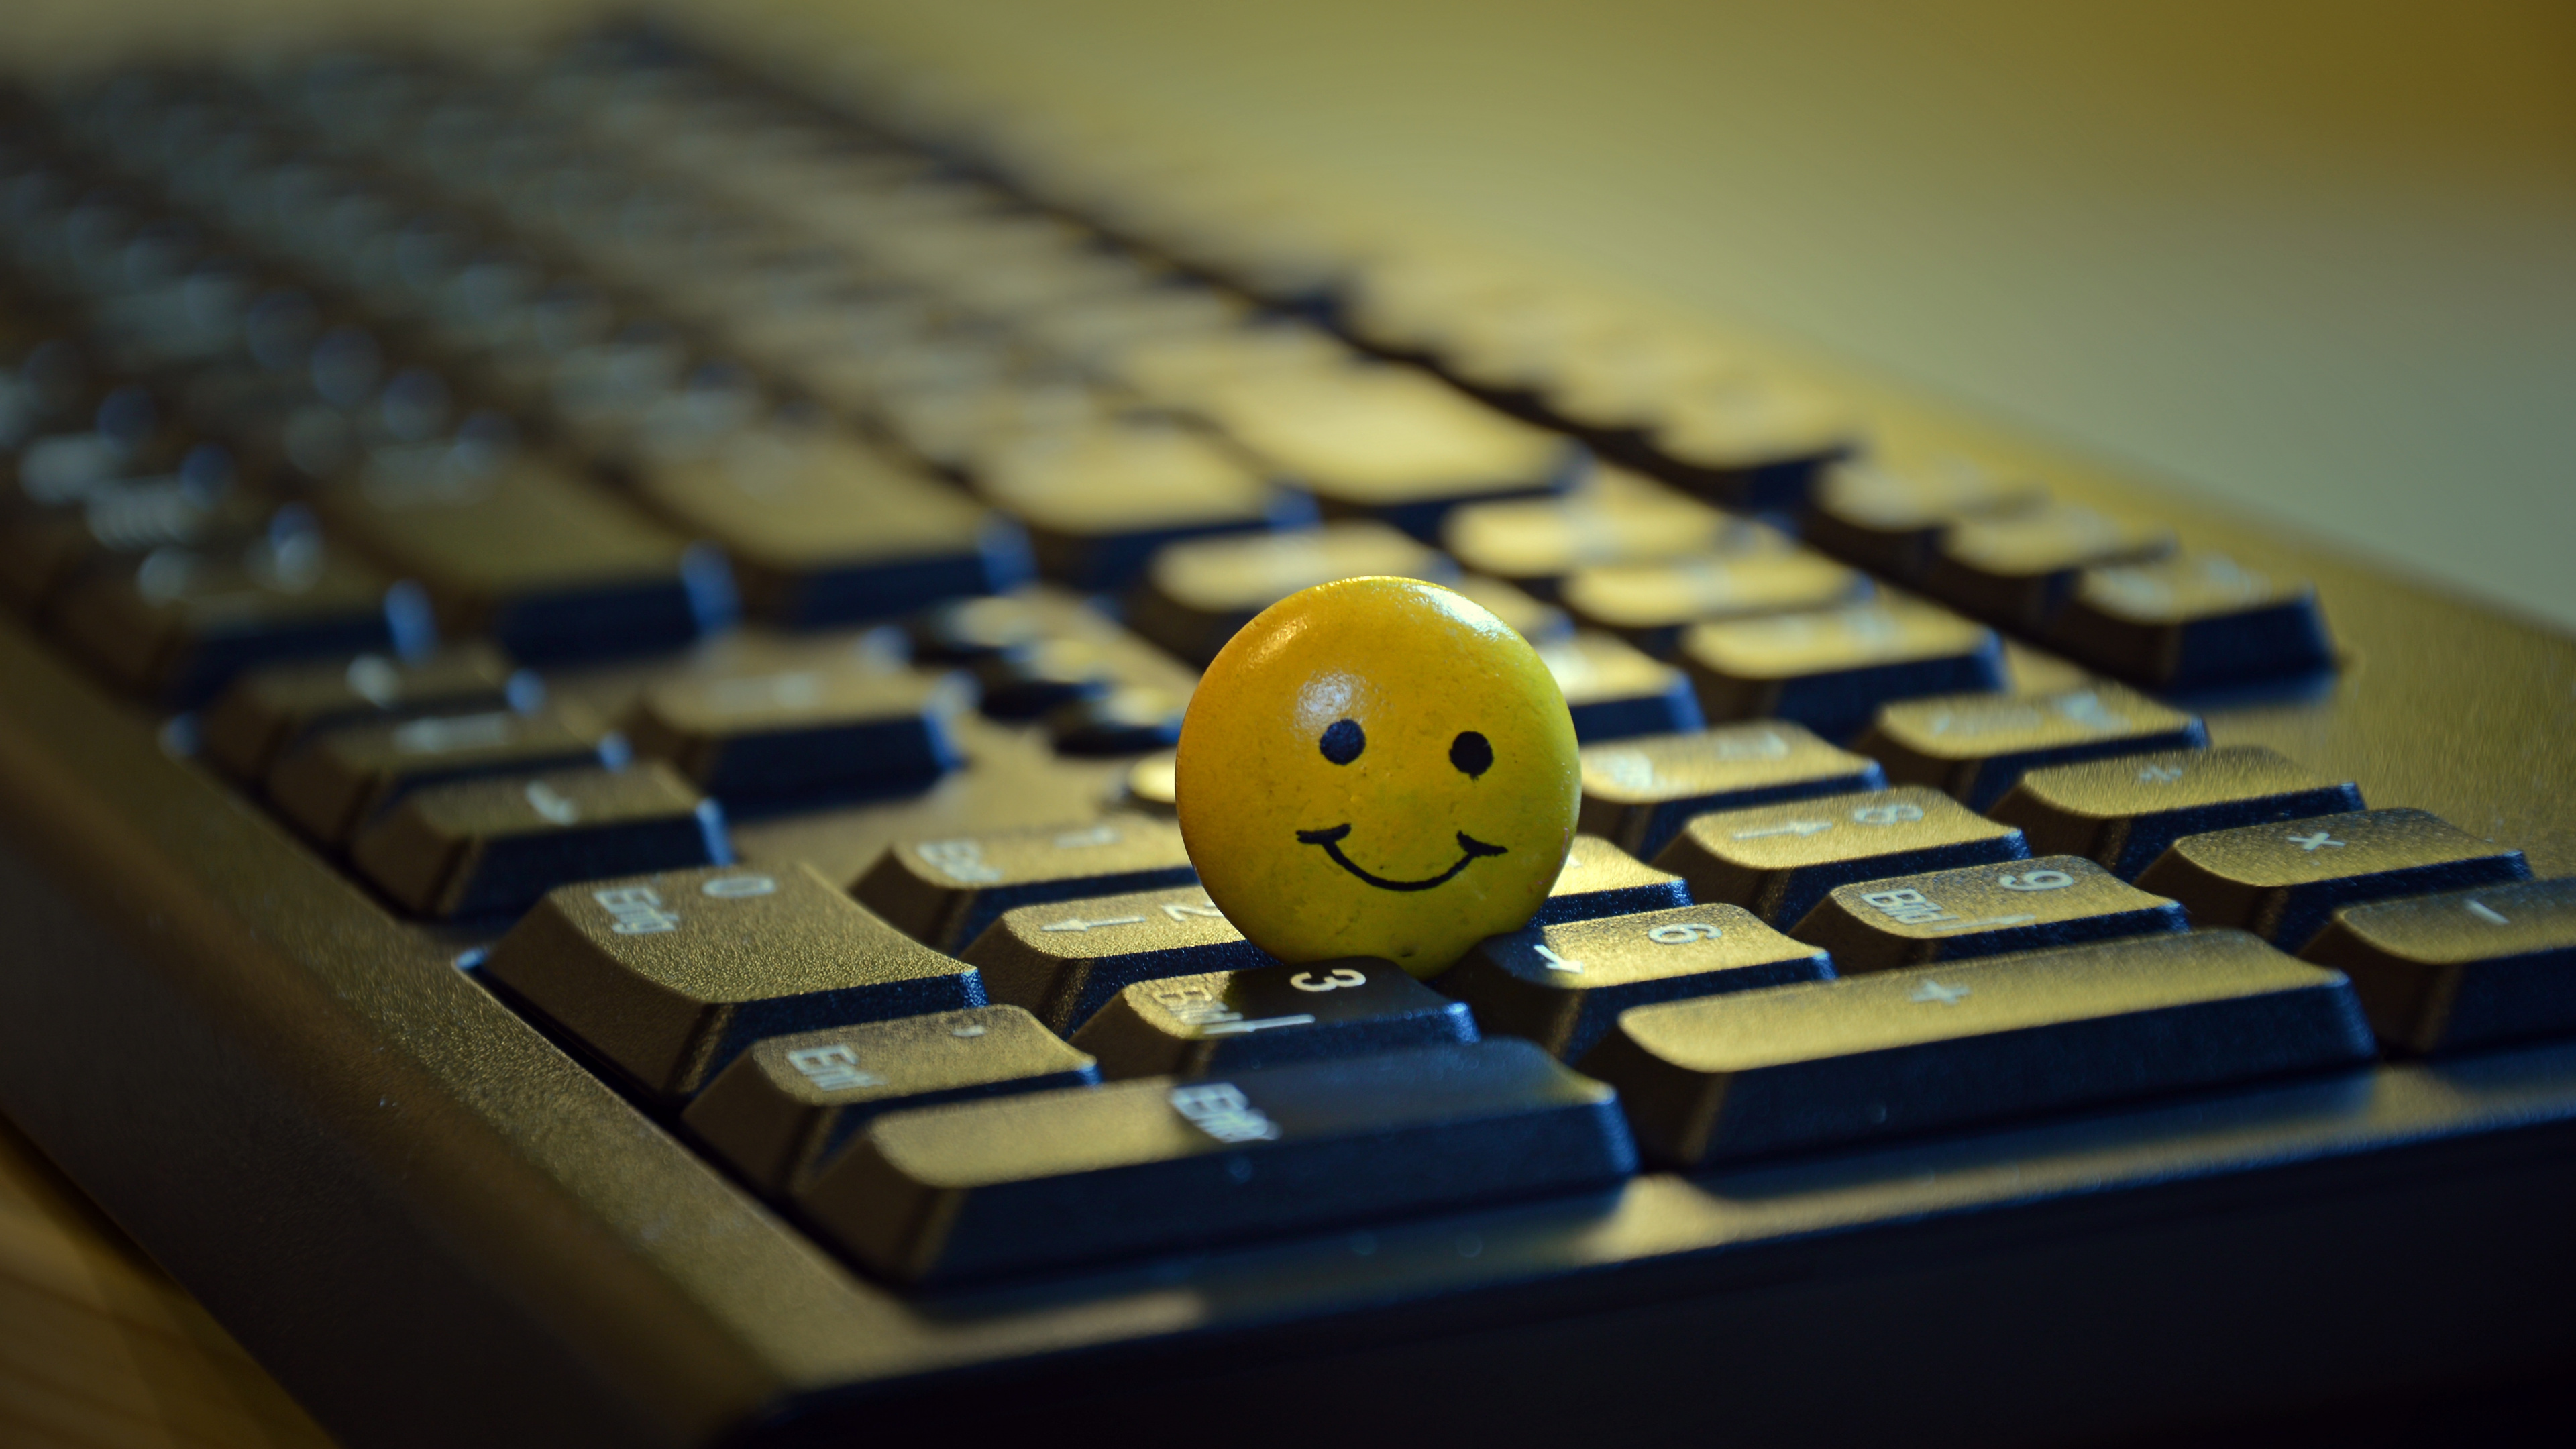 Gelber Smiley-Ball Auf Schwarzer Computertastatur. Wallpaper in 3840x2160 Resolution